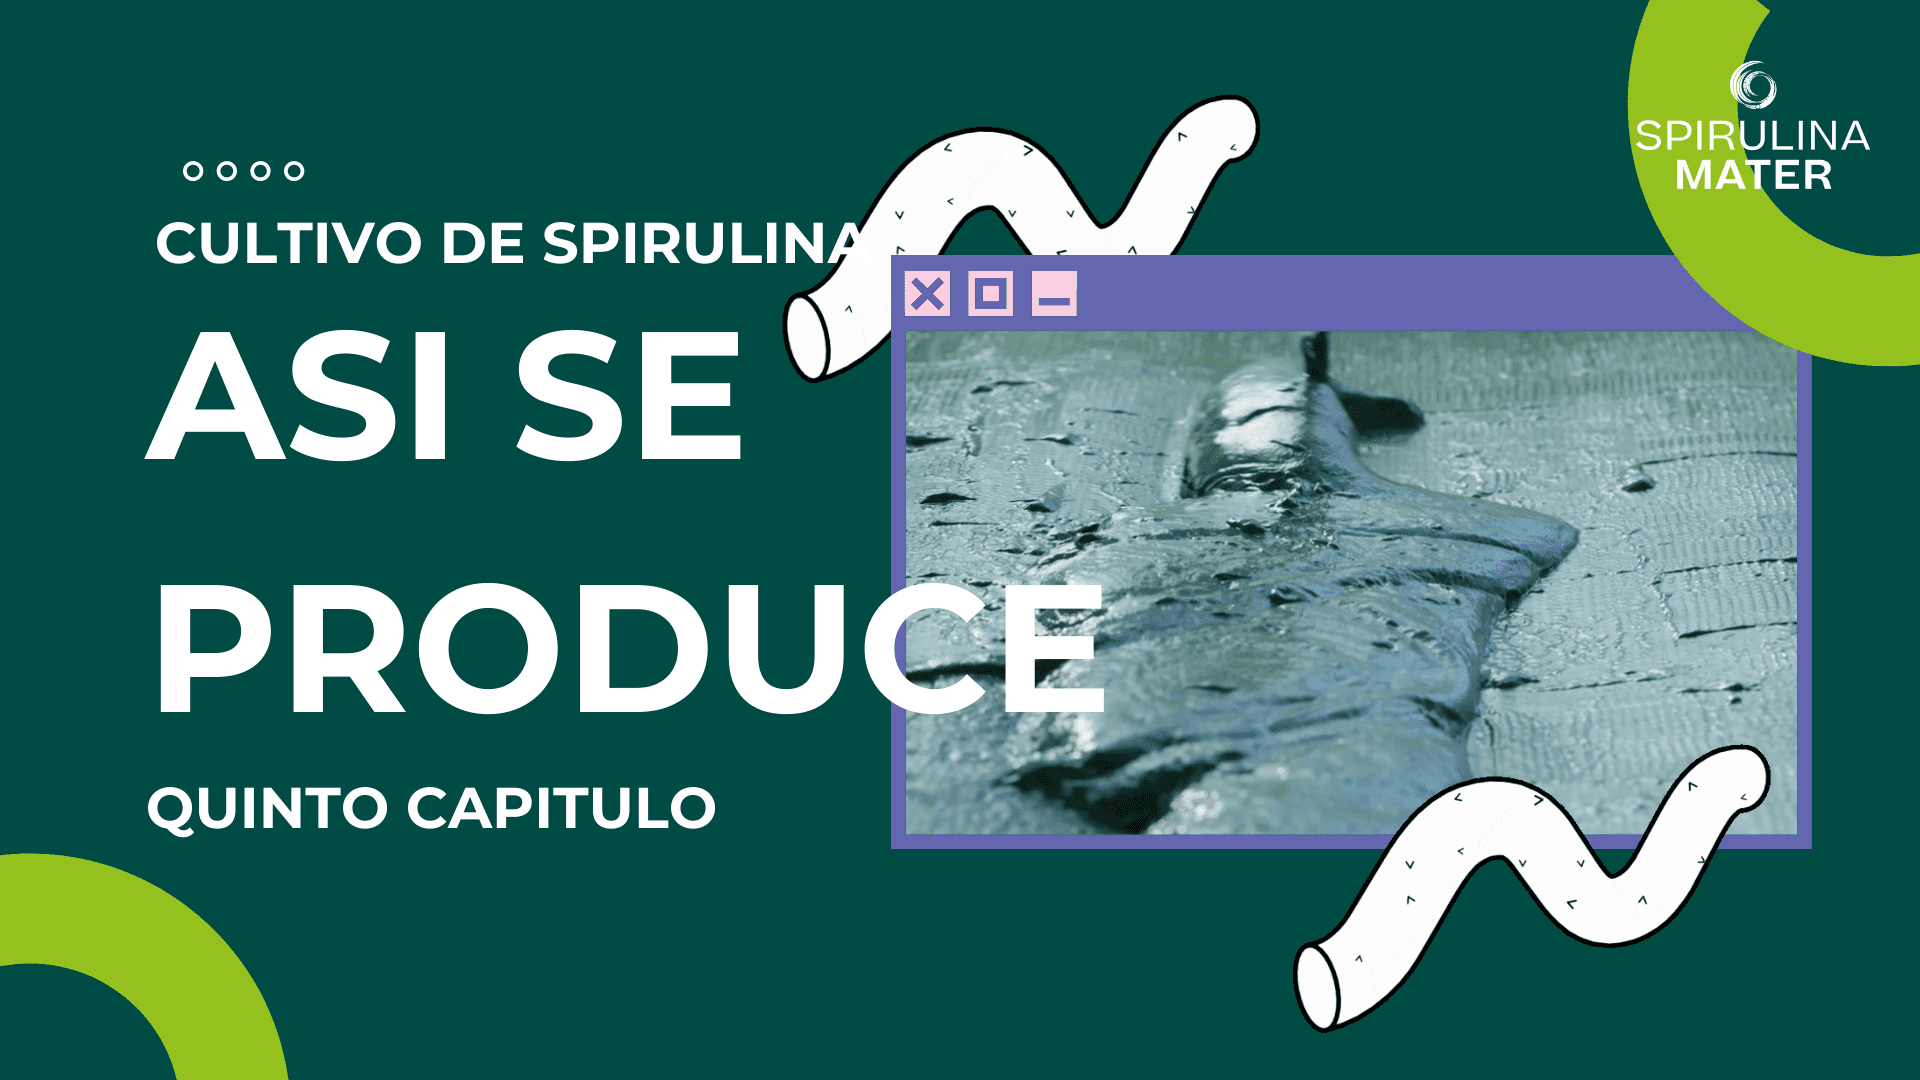 Cargar video: Mira estos videos y aprende mas sobre la Spirulina